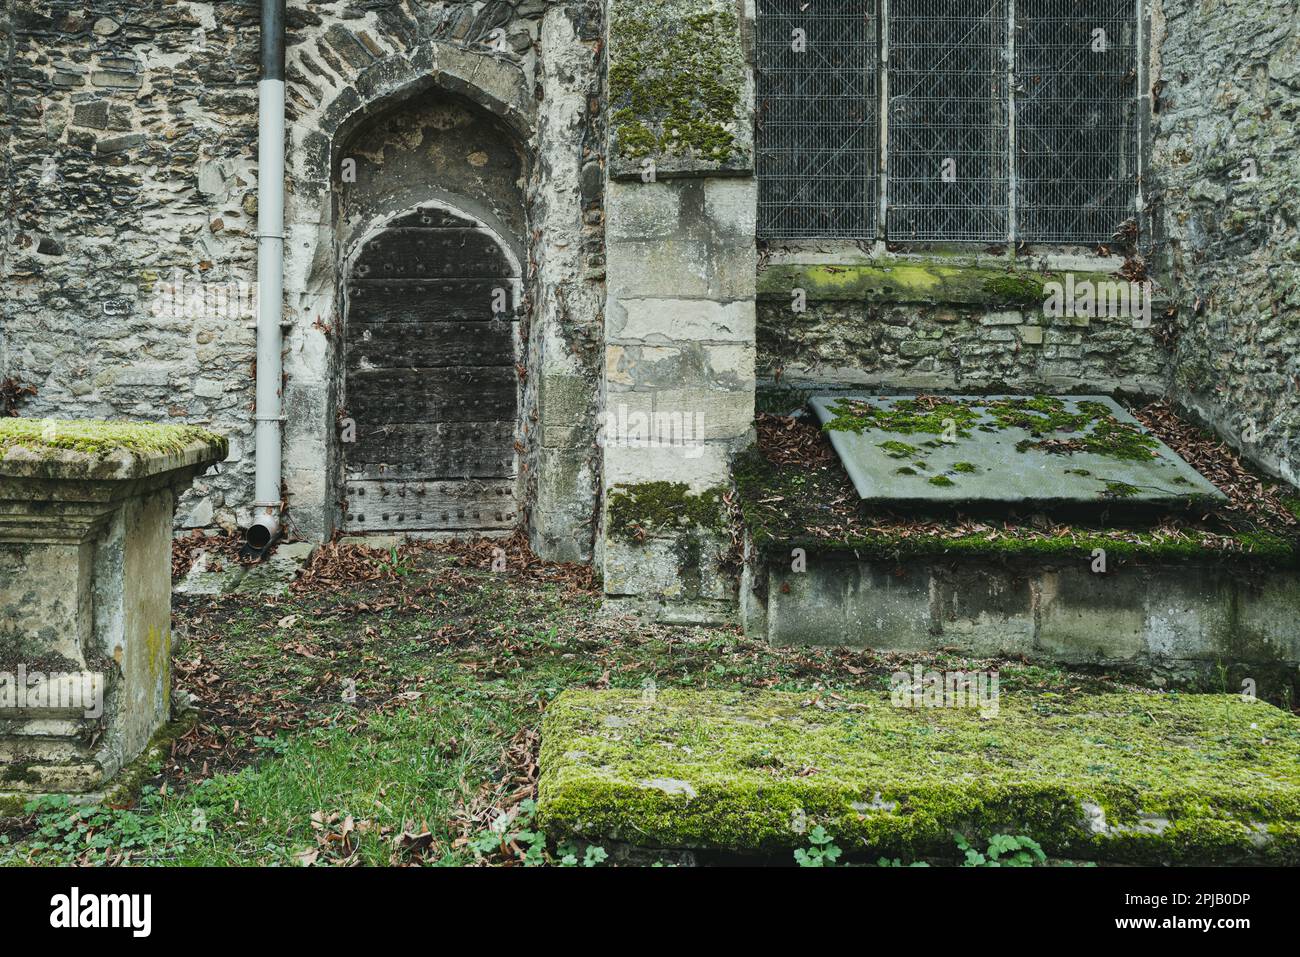 Vista dettagliata dell'ingresso di una chiesa medievale che mostra la porta della cripta. Il muschio umido è visibile sulle superfici a causa dell'ombra quasi costante. Foto Stock